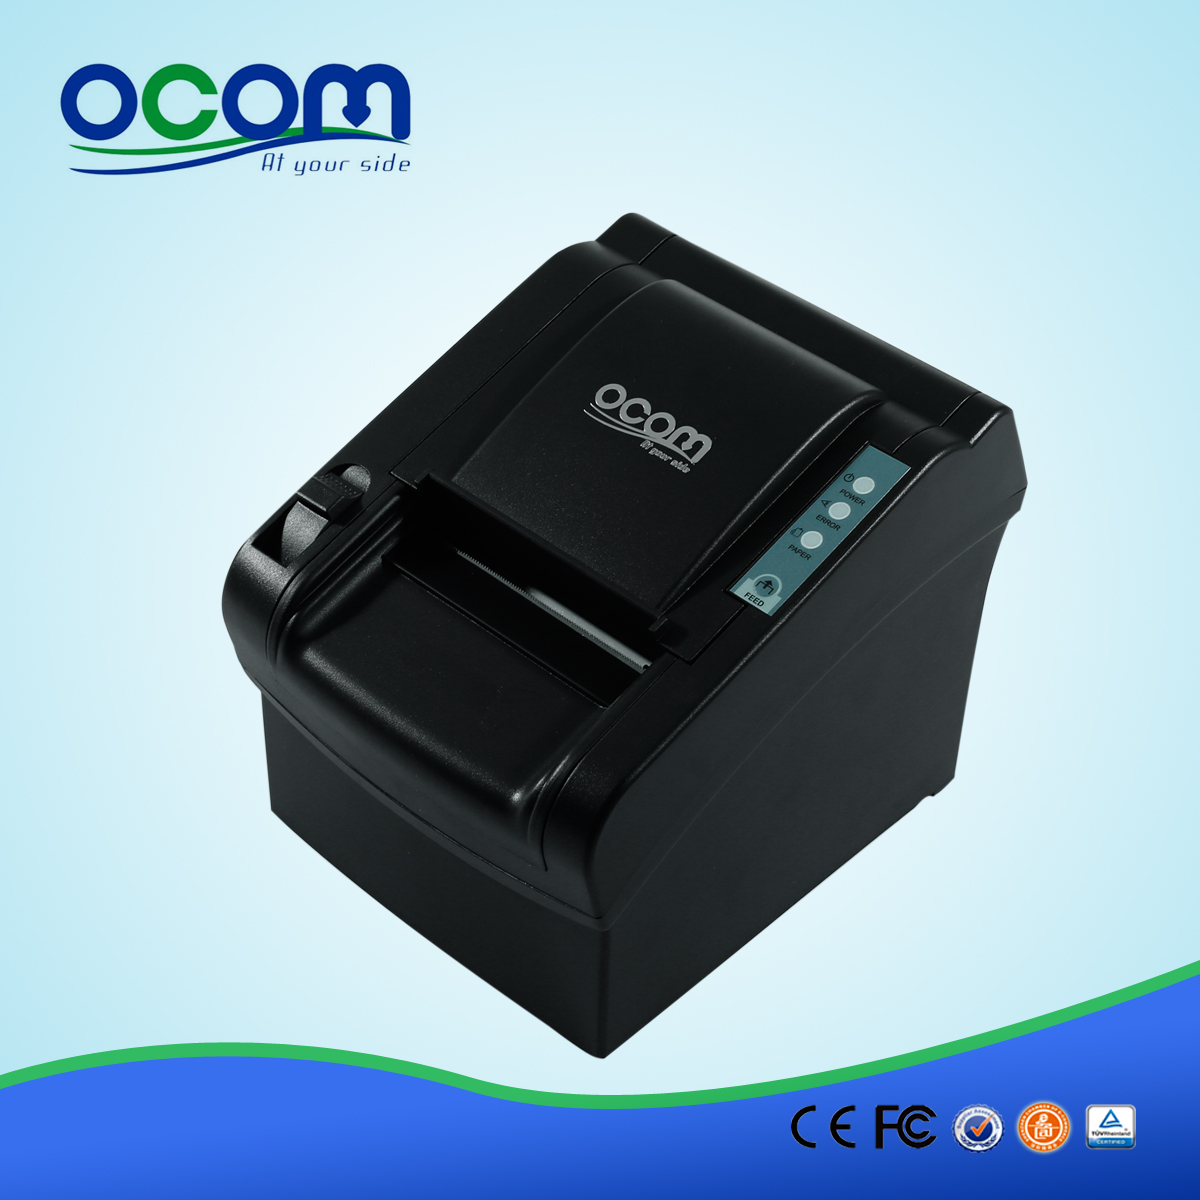 OCPP-802: Versorgungs billigen Thermodrucker Modul, Thermodrucker Preis in Indien